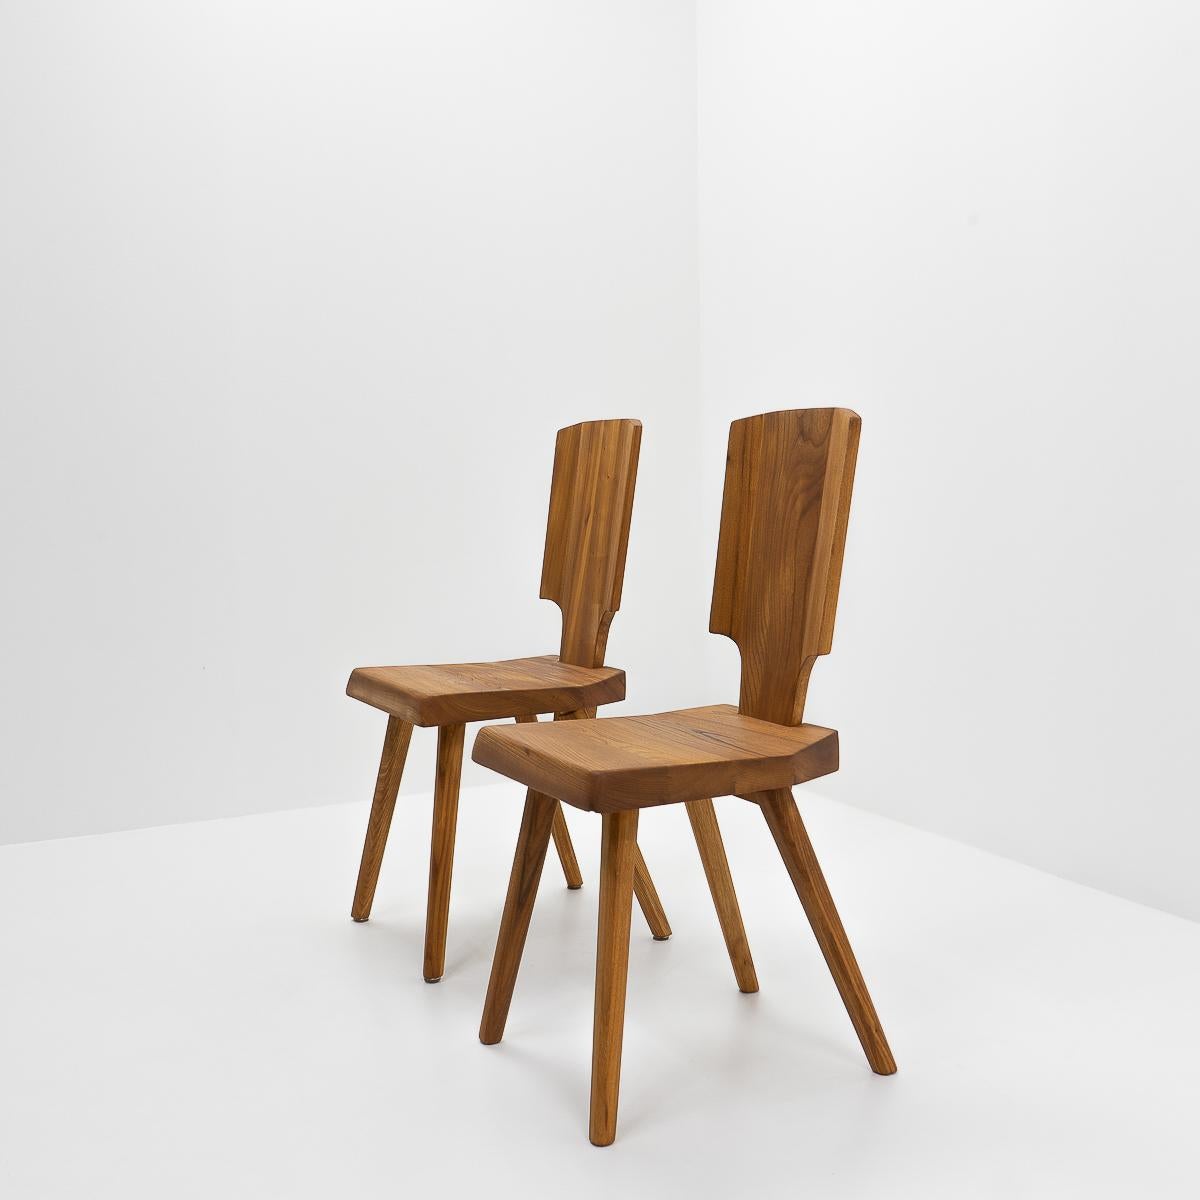 Chaises S28 vintage en orme : Selon Pierre Silhouette, la S28 est une interprétation moderne de la chaise alsacienne traditionnelle, débarrassée de tout élément décoratif, tout en conservant son confort et sa silhouette.

Comme tous les meubles de